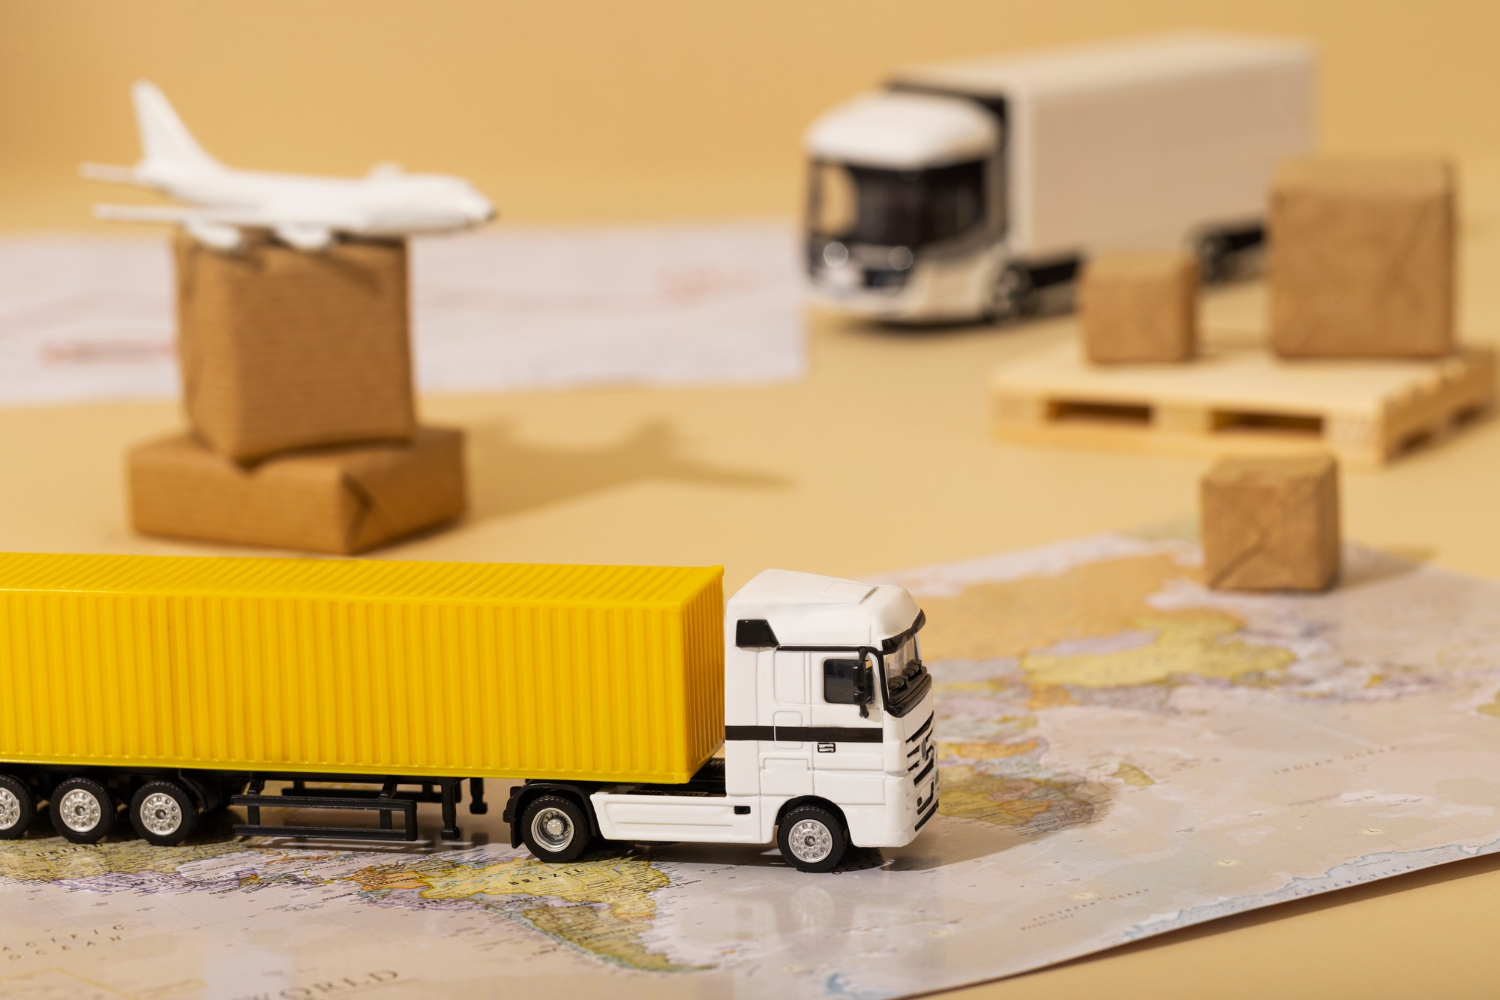 Miniaturas de caminhões, caixas e um avião sobre um mapa.